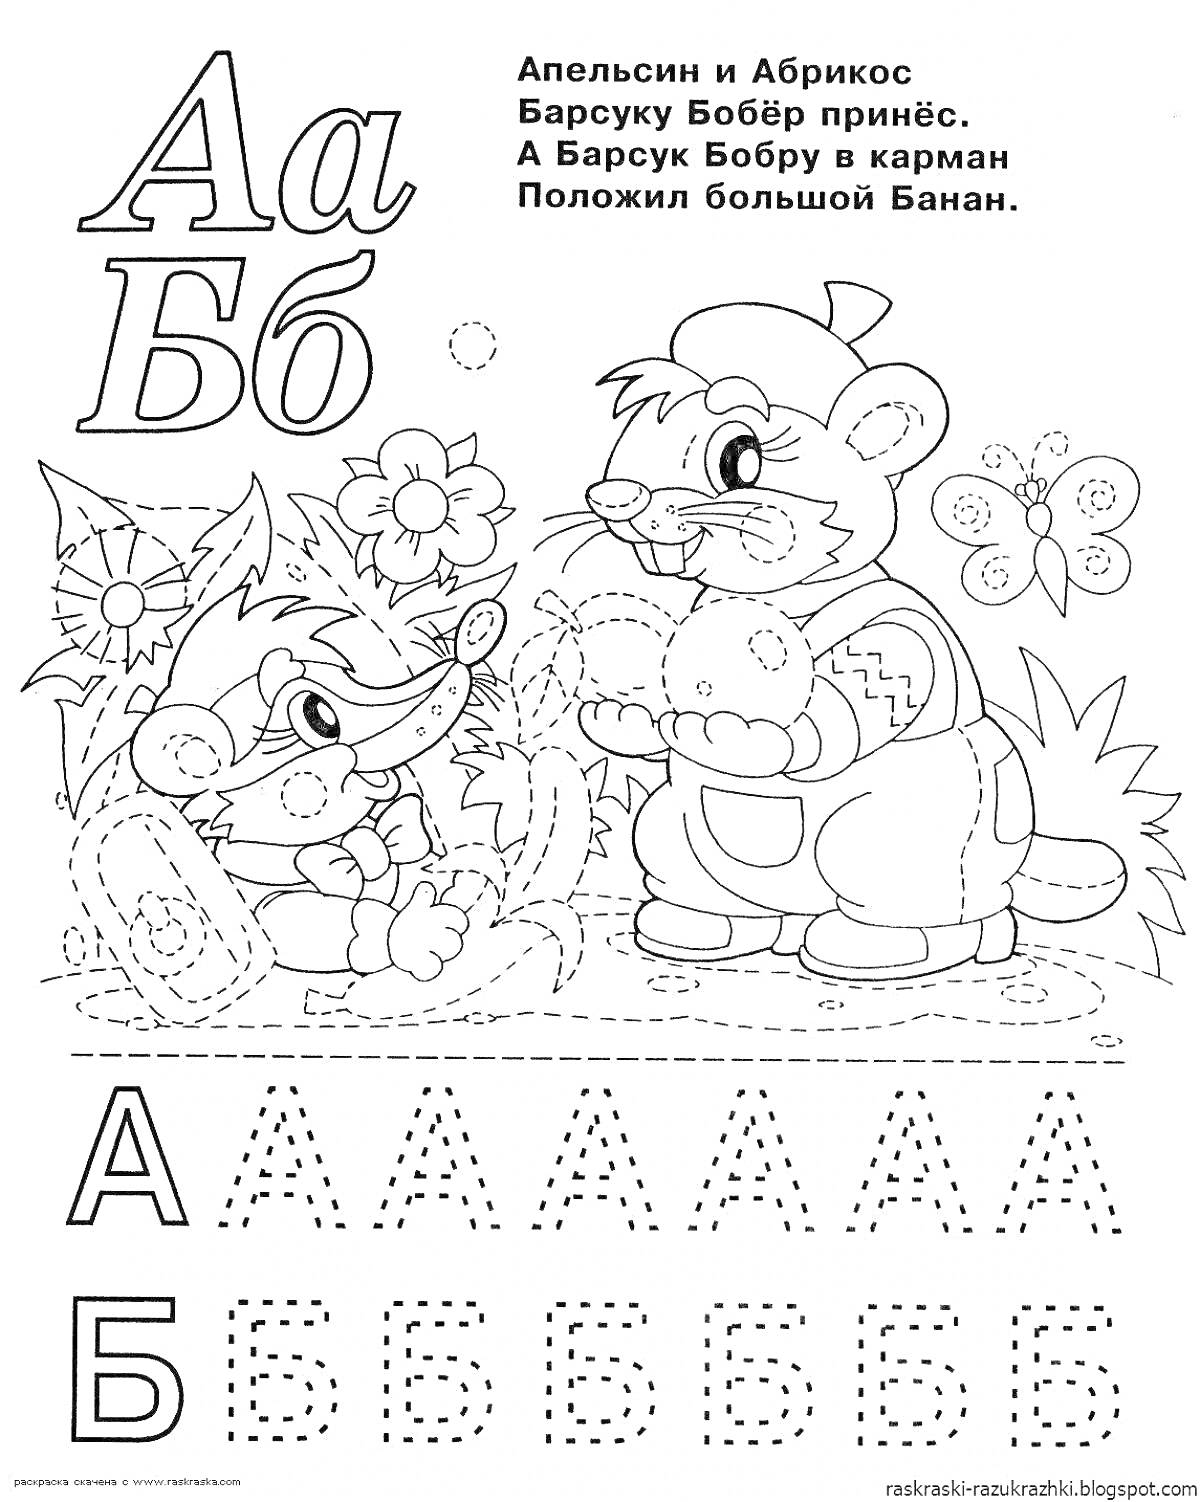 Алфавитная раскраска, буквы А и Б, барсук с бобром, енот, описание, цветы, точечные линии для обводки букв